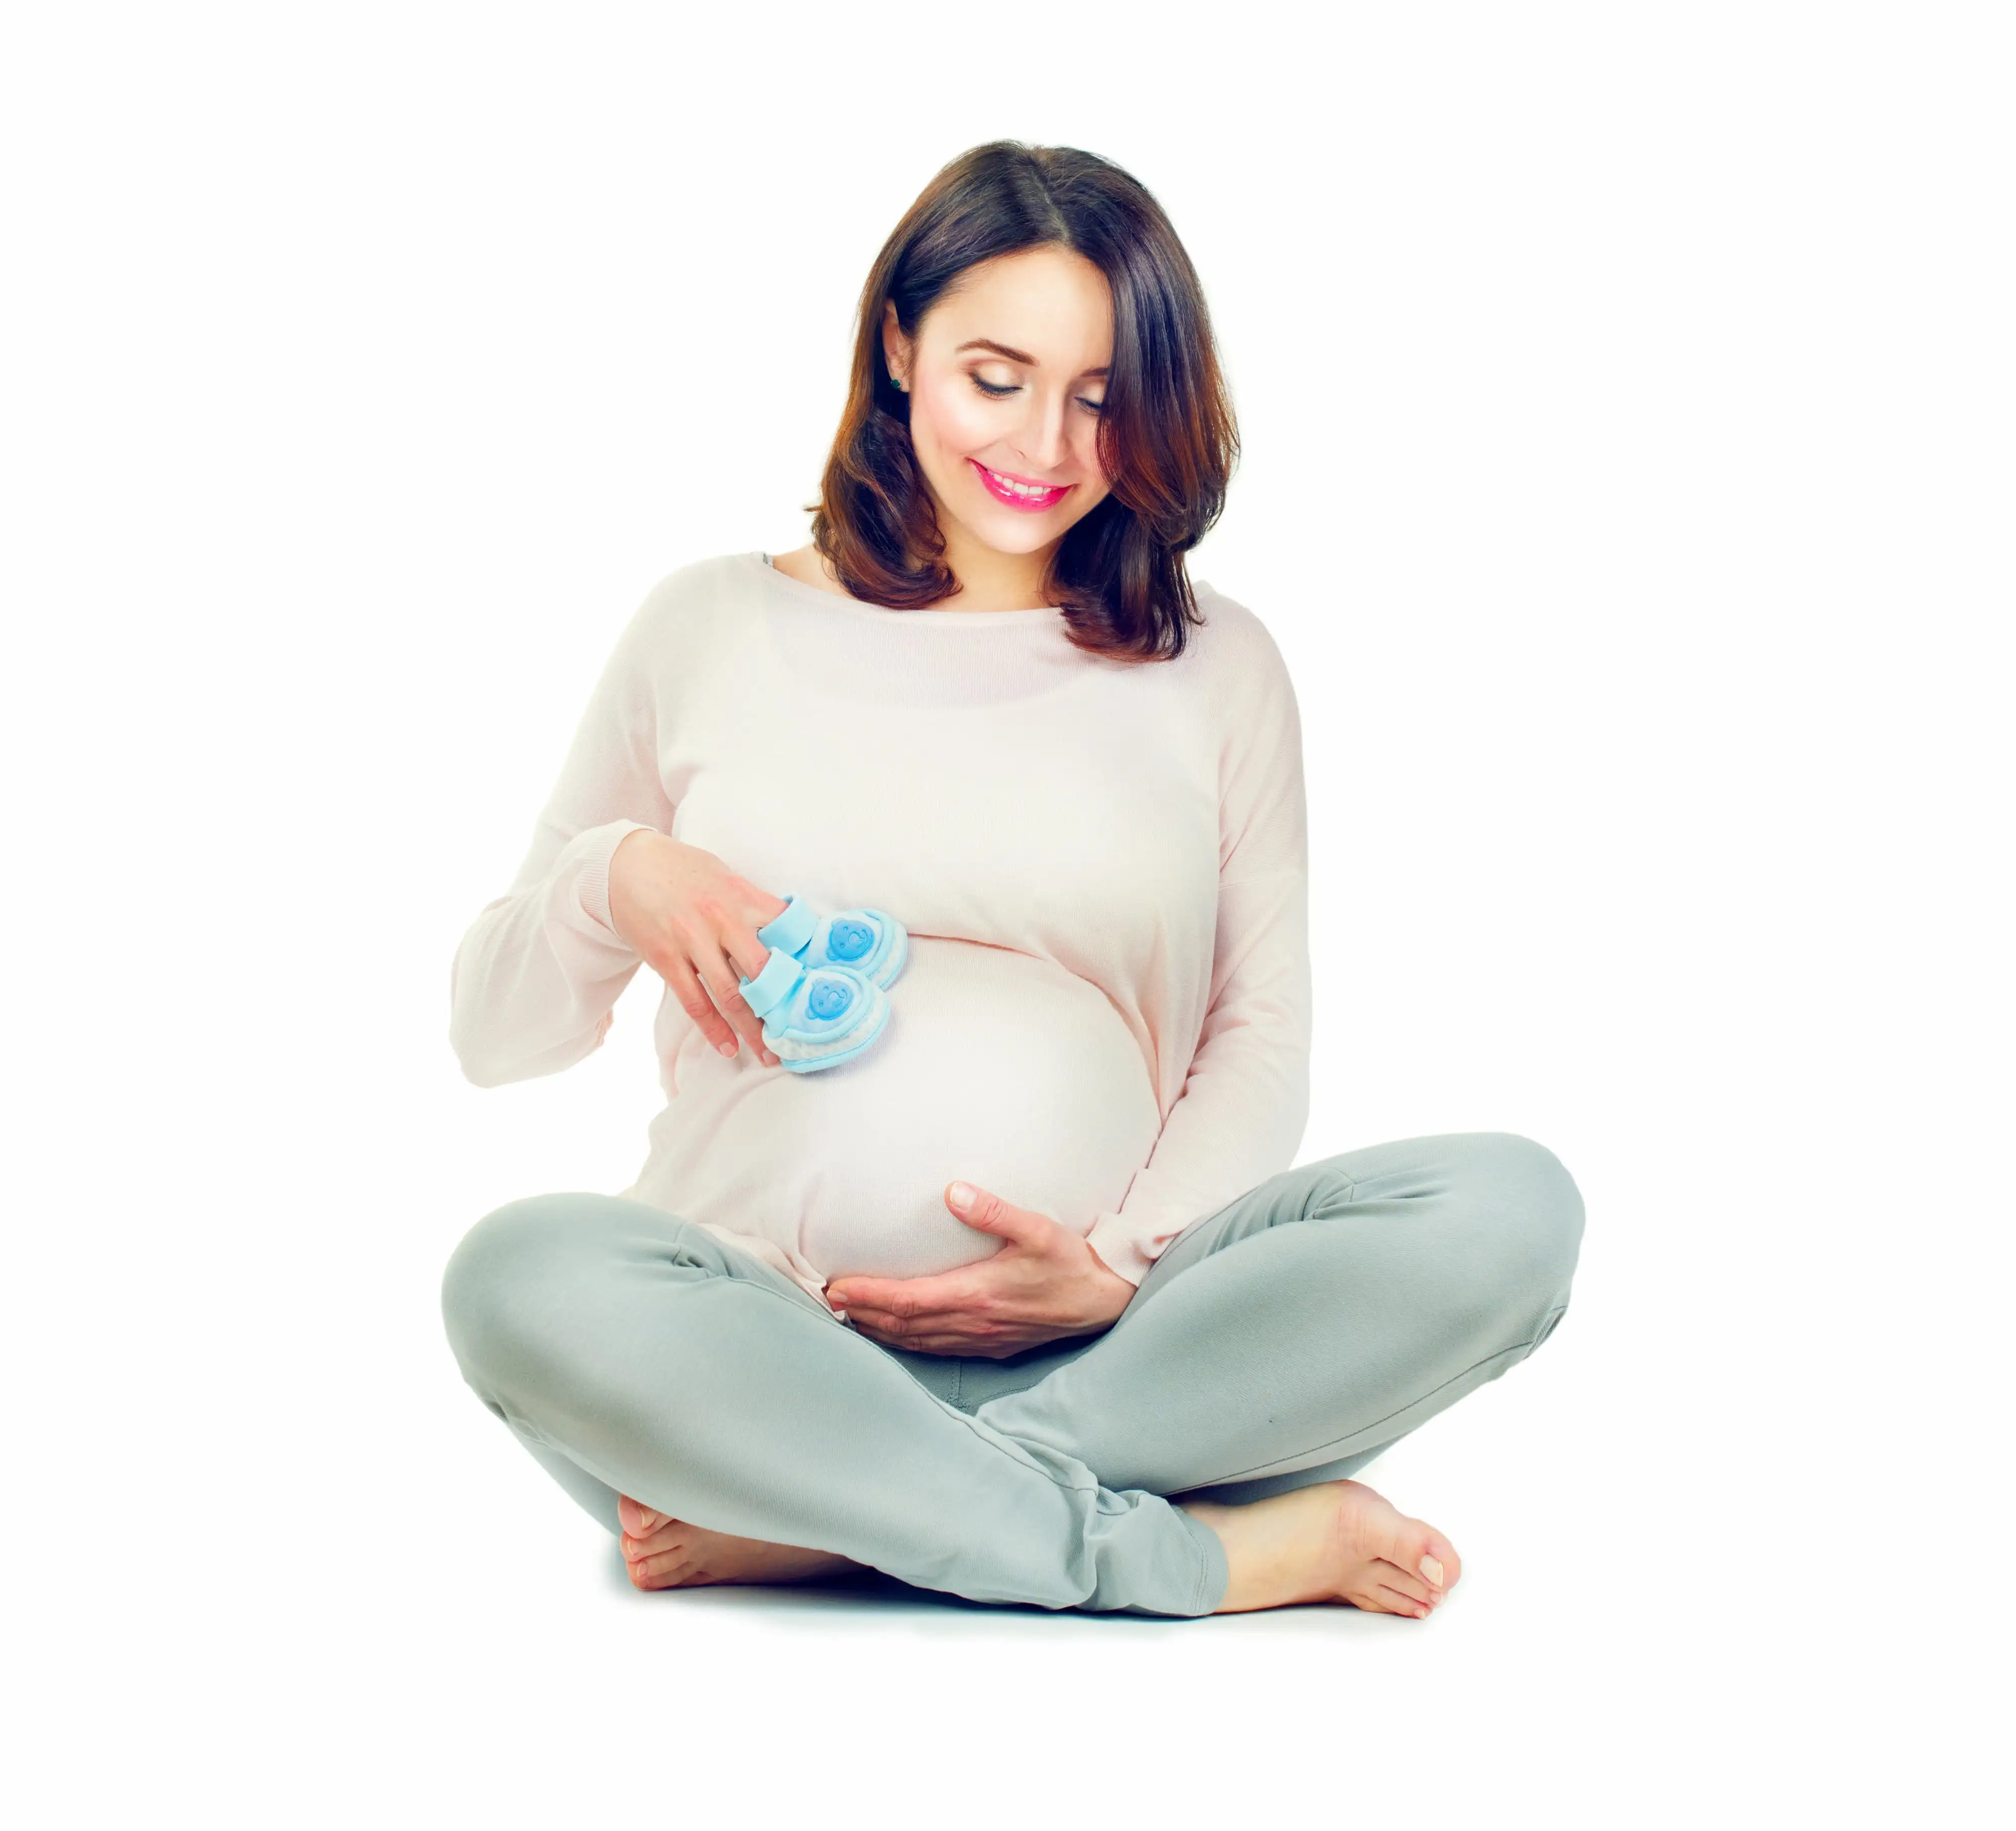 Taxane use in pregnancy